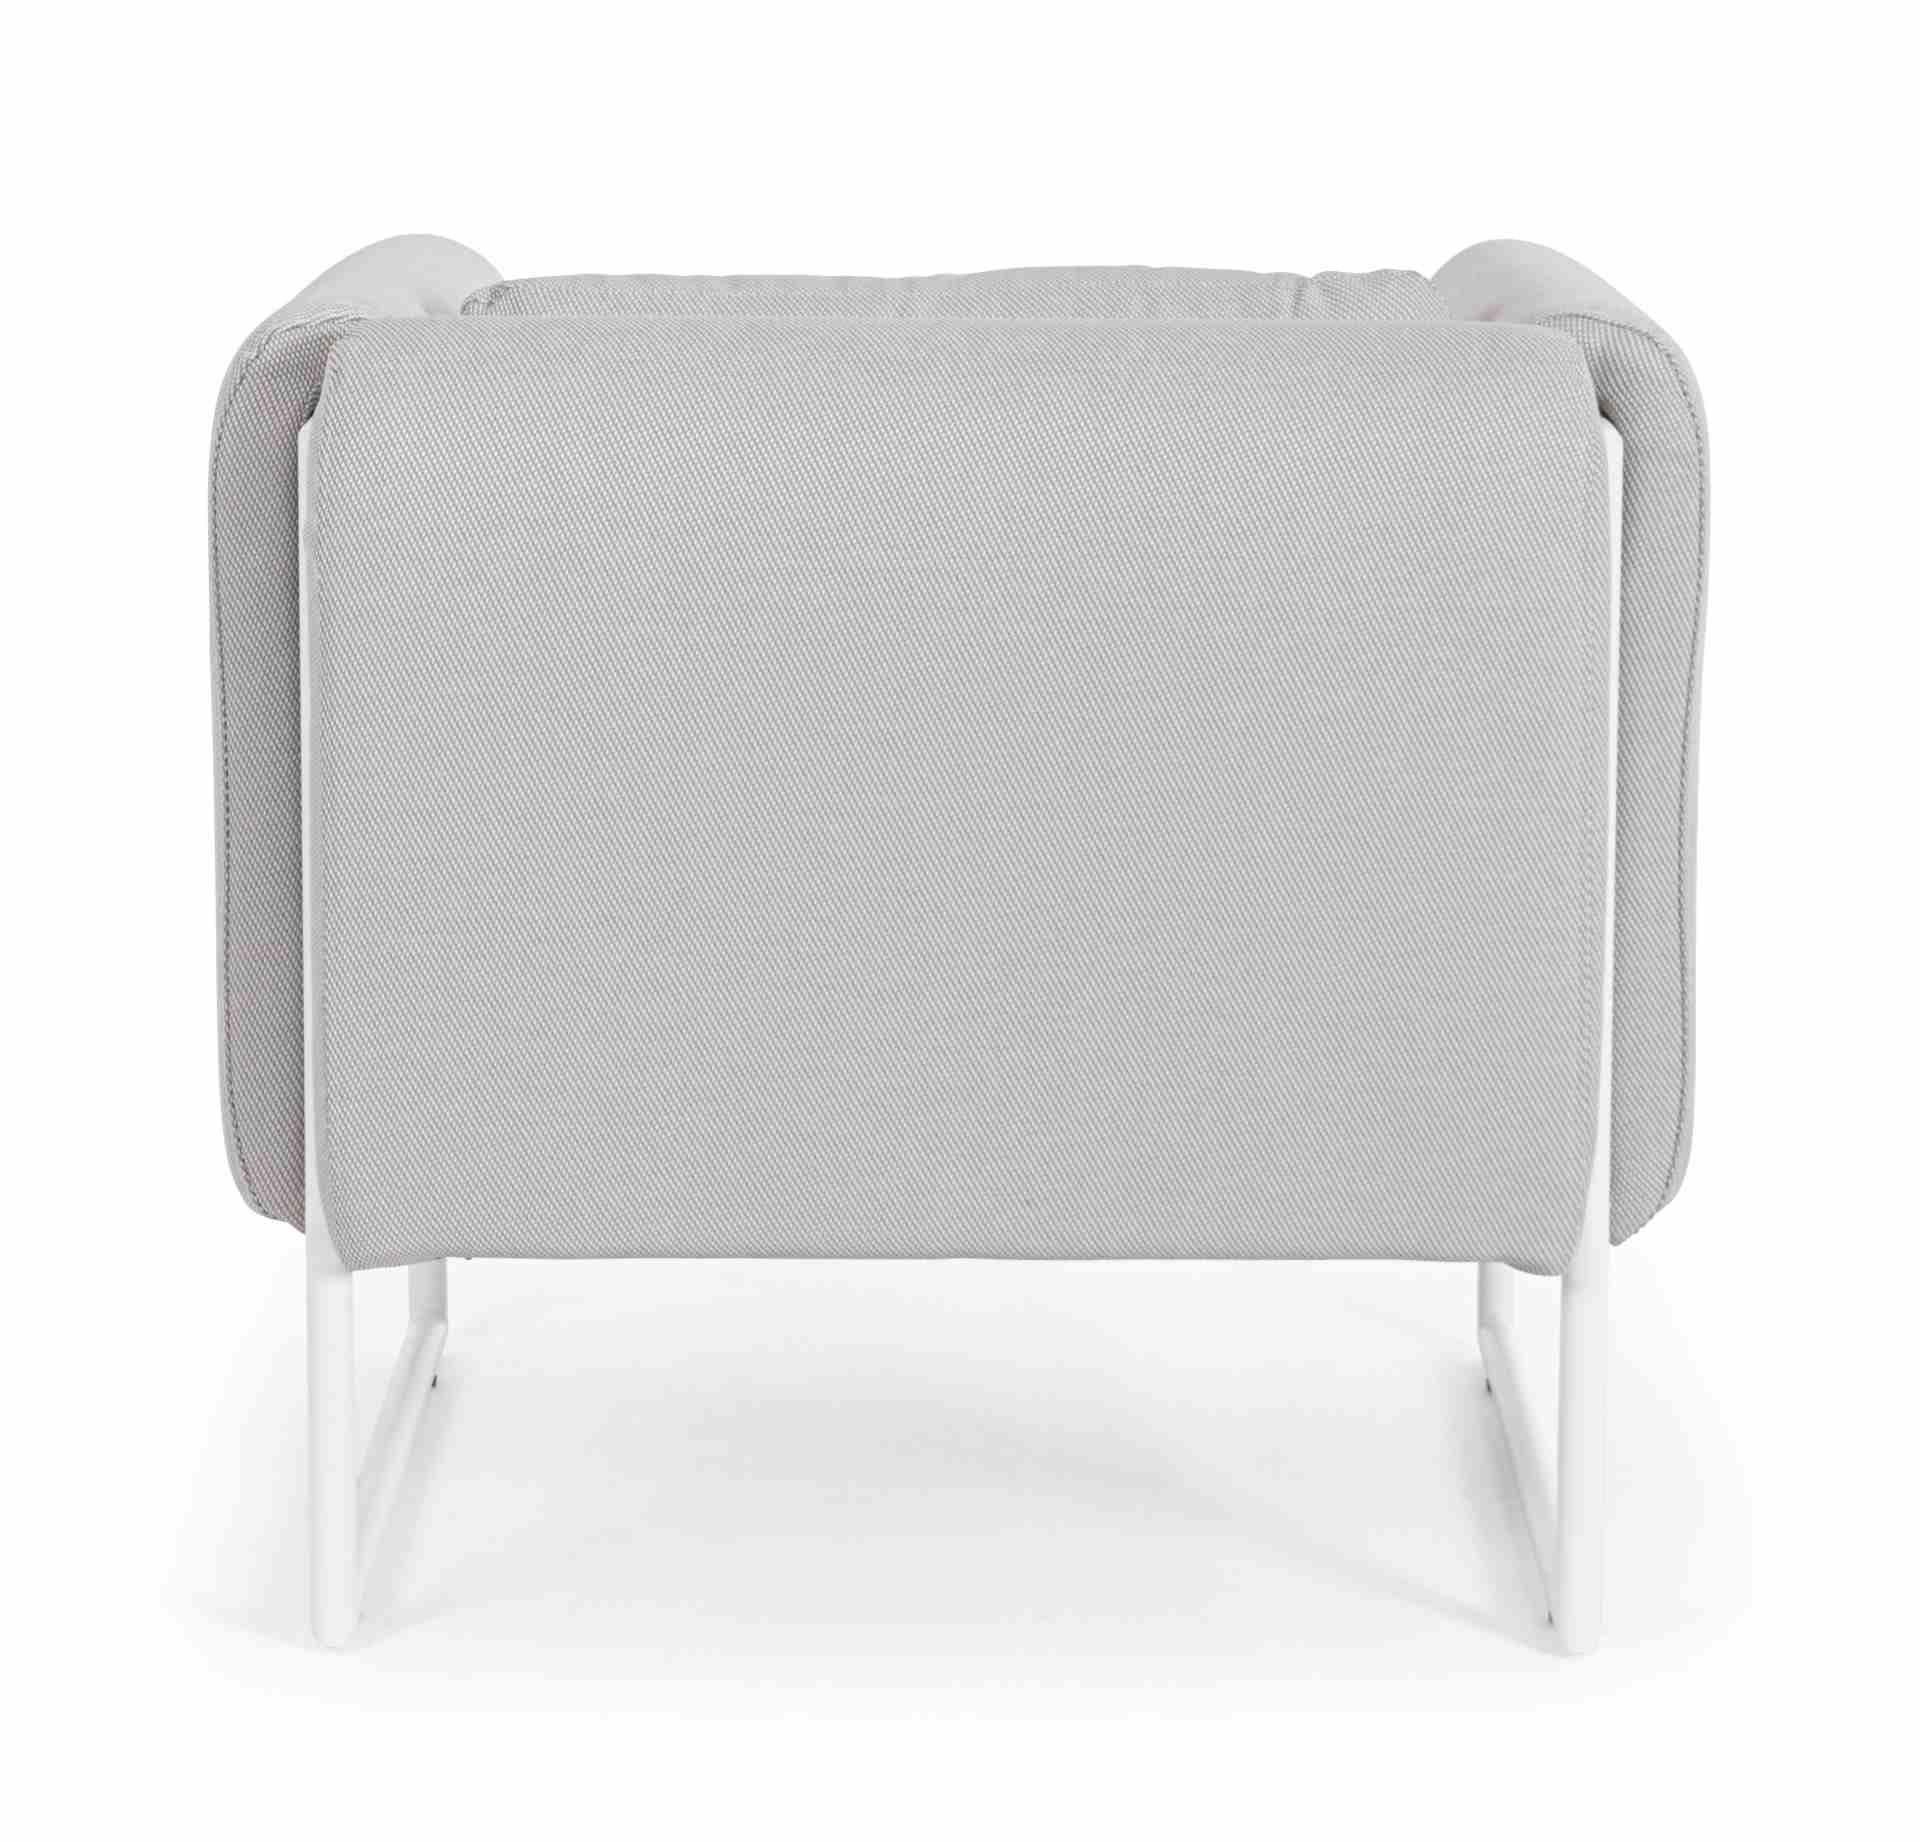 Der Gartensessel Pixel überzeugt mit seinem modernen Design. Gefertigt wurde er aus Olefin-Stoff, welcher einen grauen Farbton besitzt. Das Gestell ist aus Aluminium und hat eine weiße Farbe. Der Sessel verfügt über eine Sitzhöhe von 42 cm und ist für den